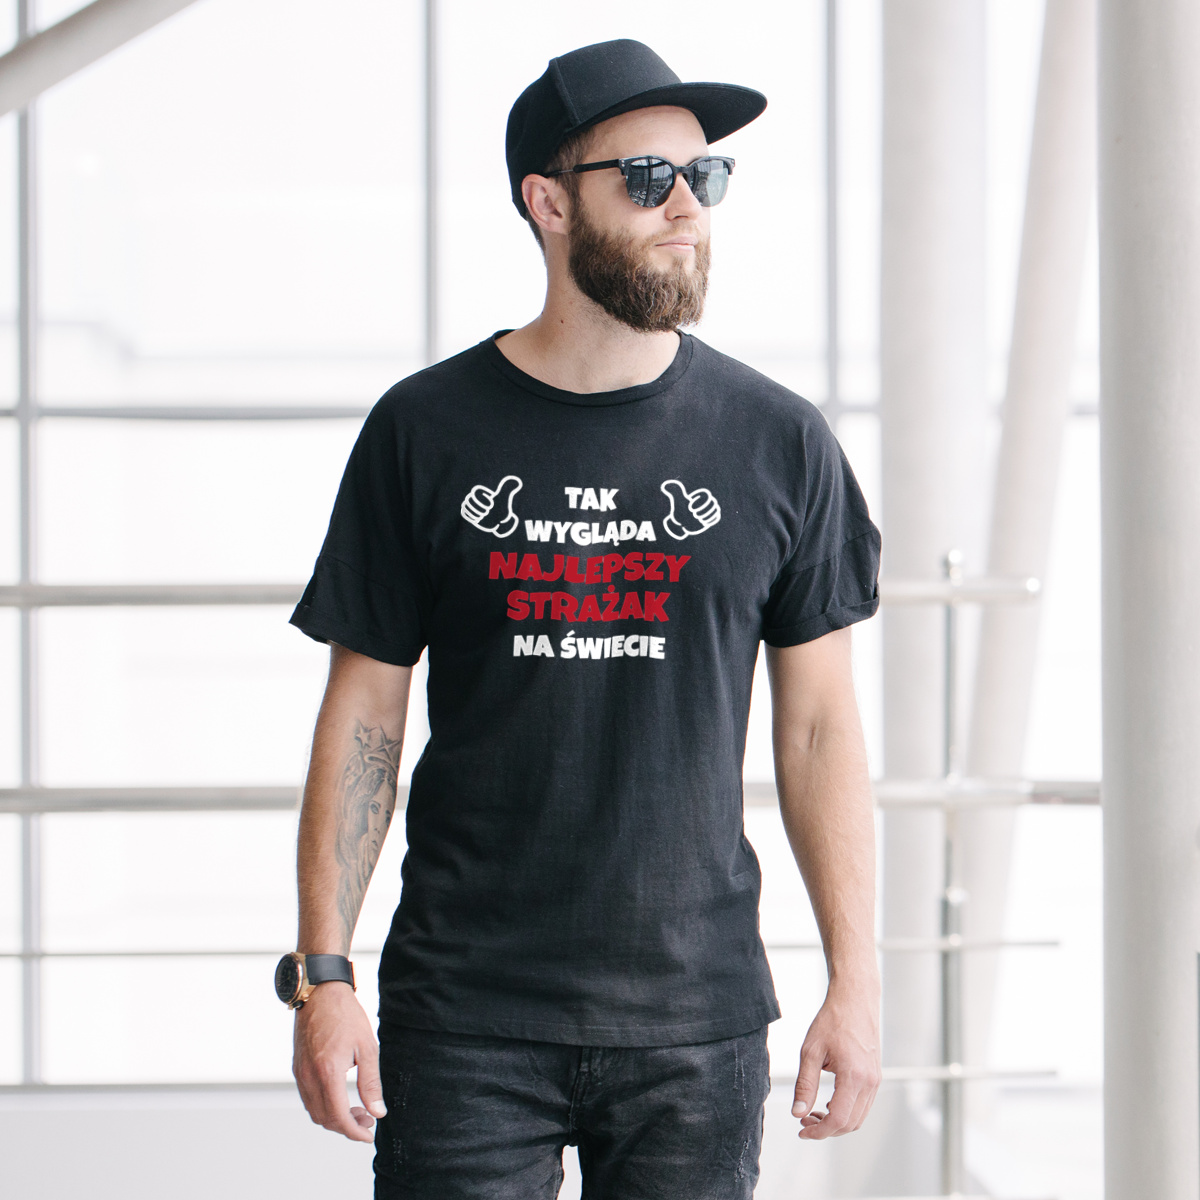 Tak Wygląda Najlepszy Strażak Na Świecie - Męska Koszulka Czarna